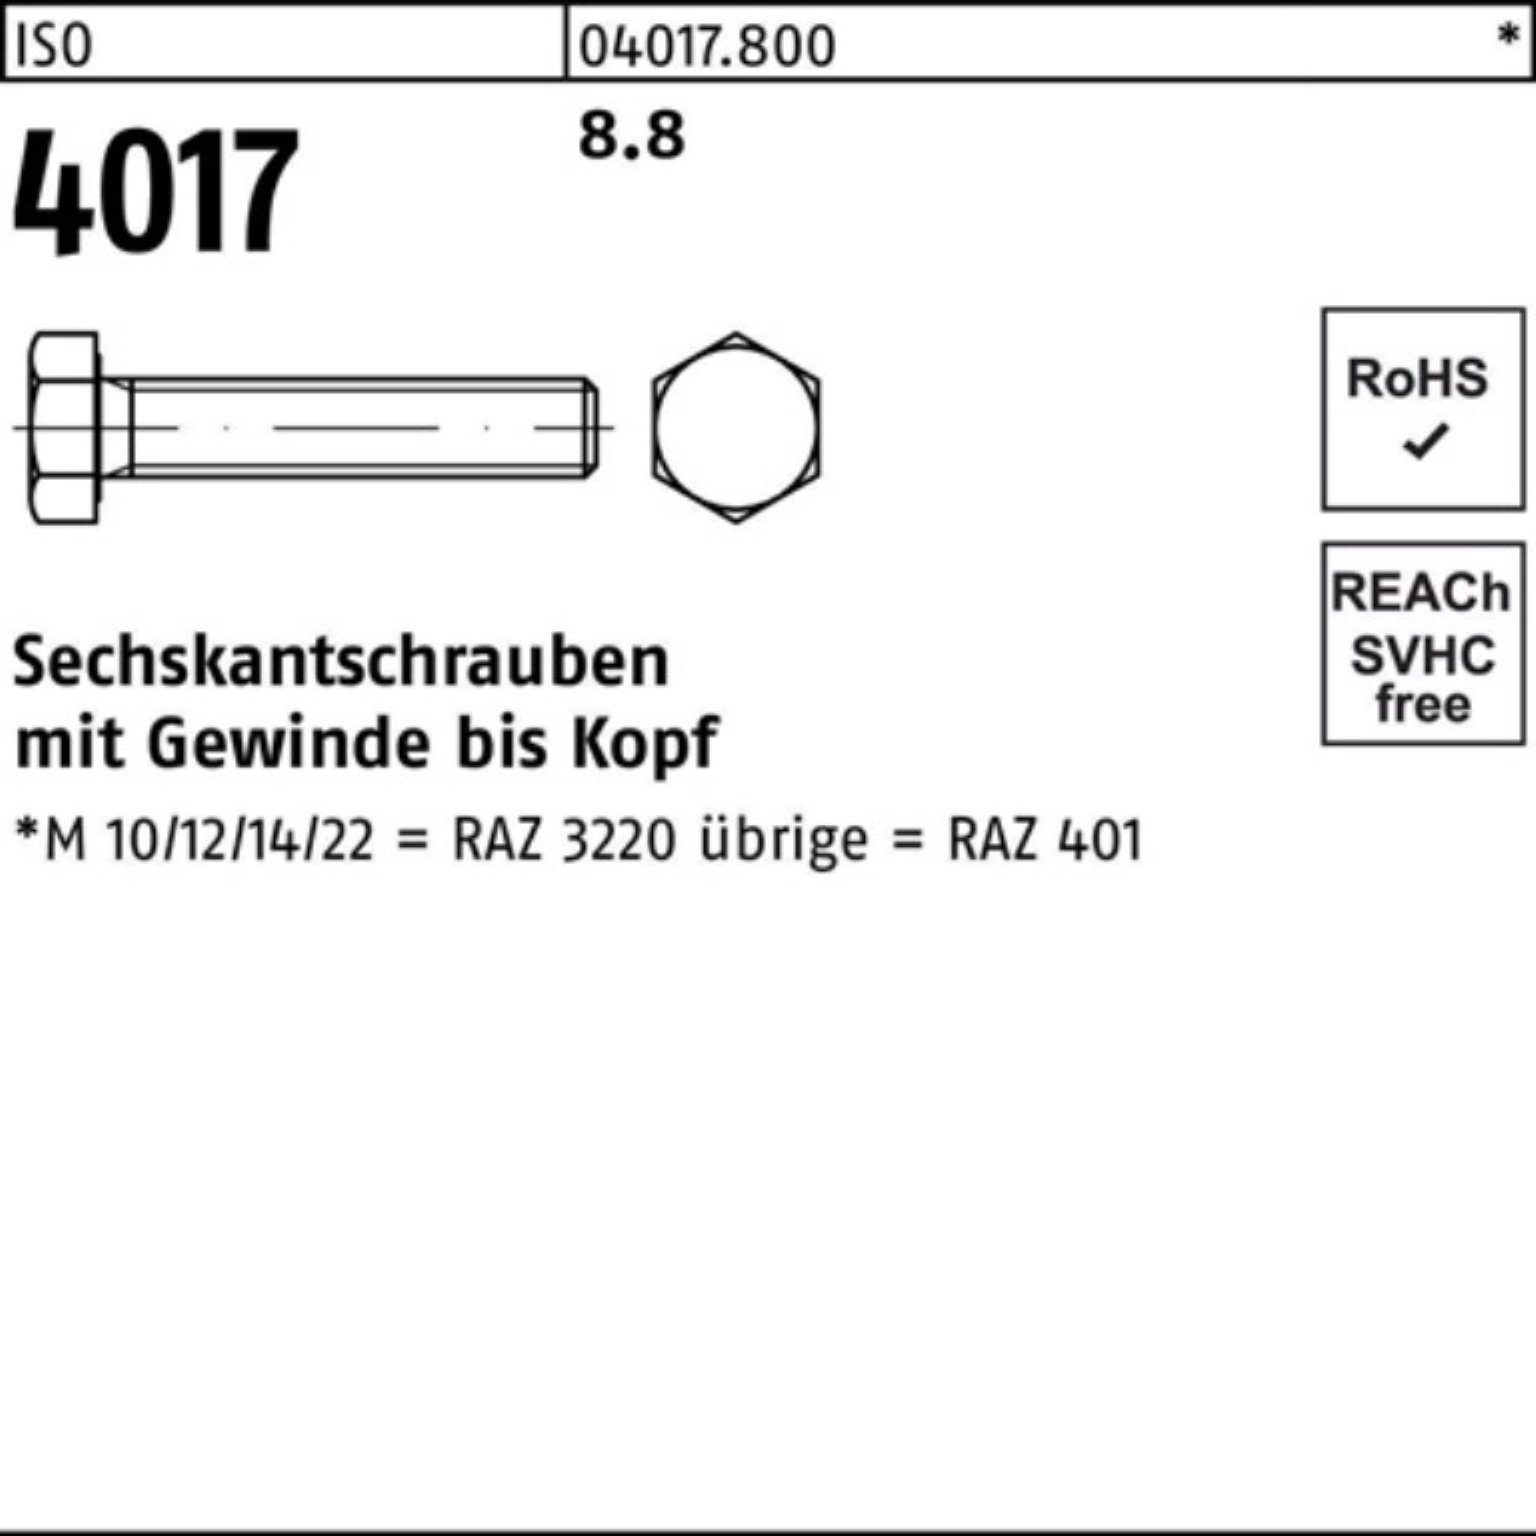 ISO Sechskantschraube Bufab 4017 VG ISO Sechskantschraube M8x Stück 8.8 22 401 200 Pack 200er